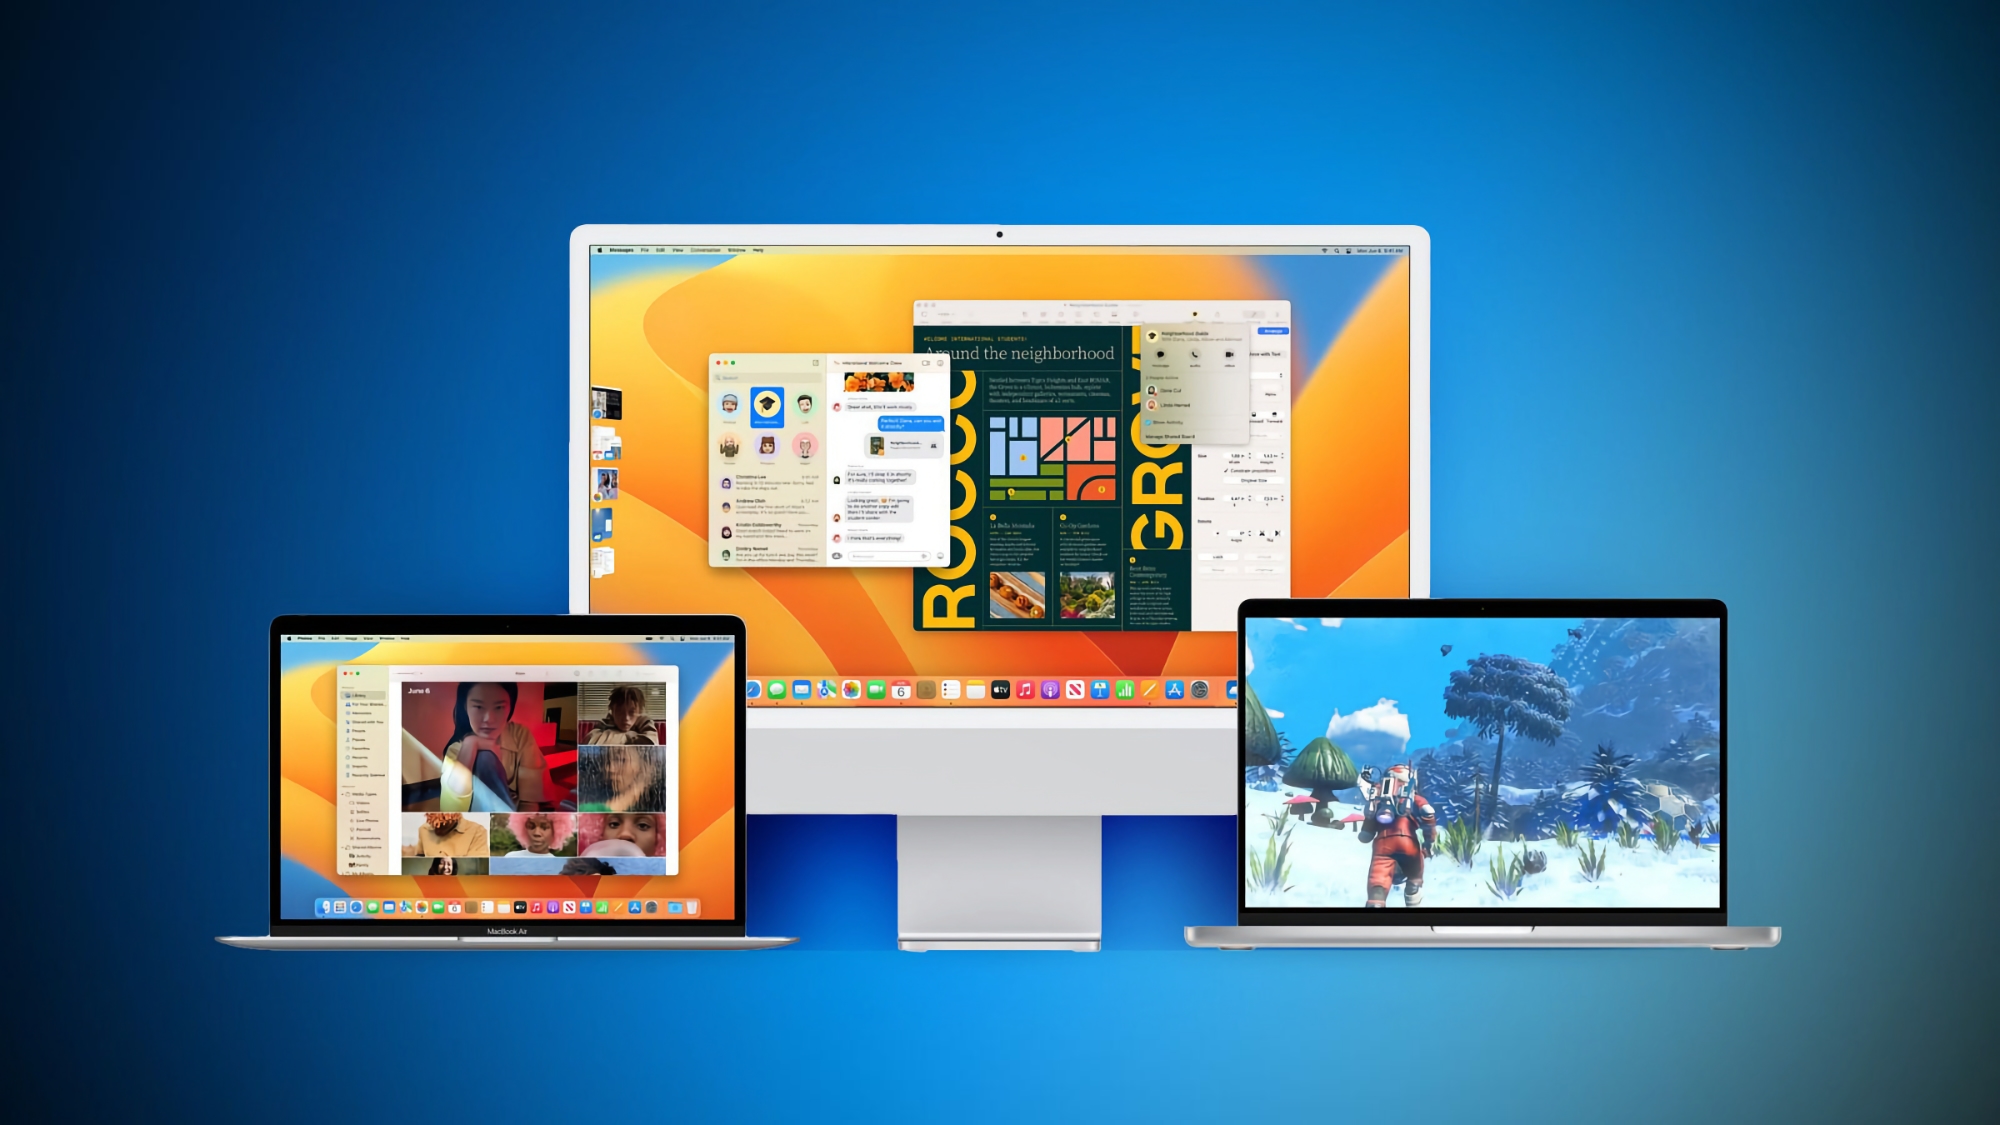 Nach iOS 16.2: Eine stabile Version von macOS Ventura 13.1 mit Freeform und verbesserter Sicherheit wurde veröffentlicht